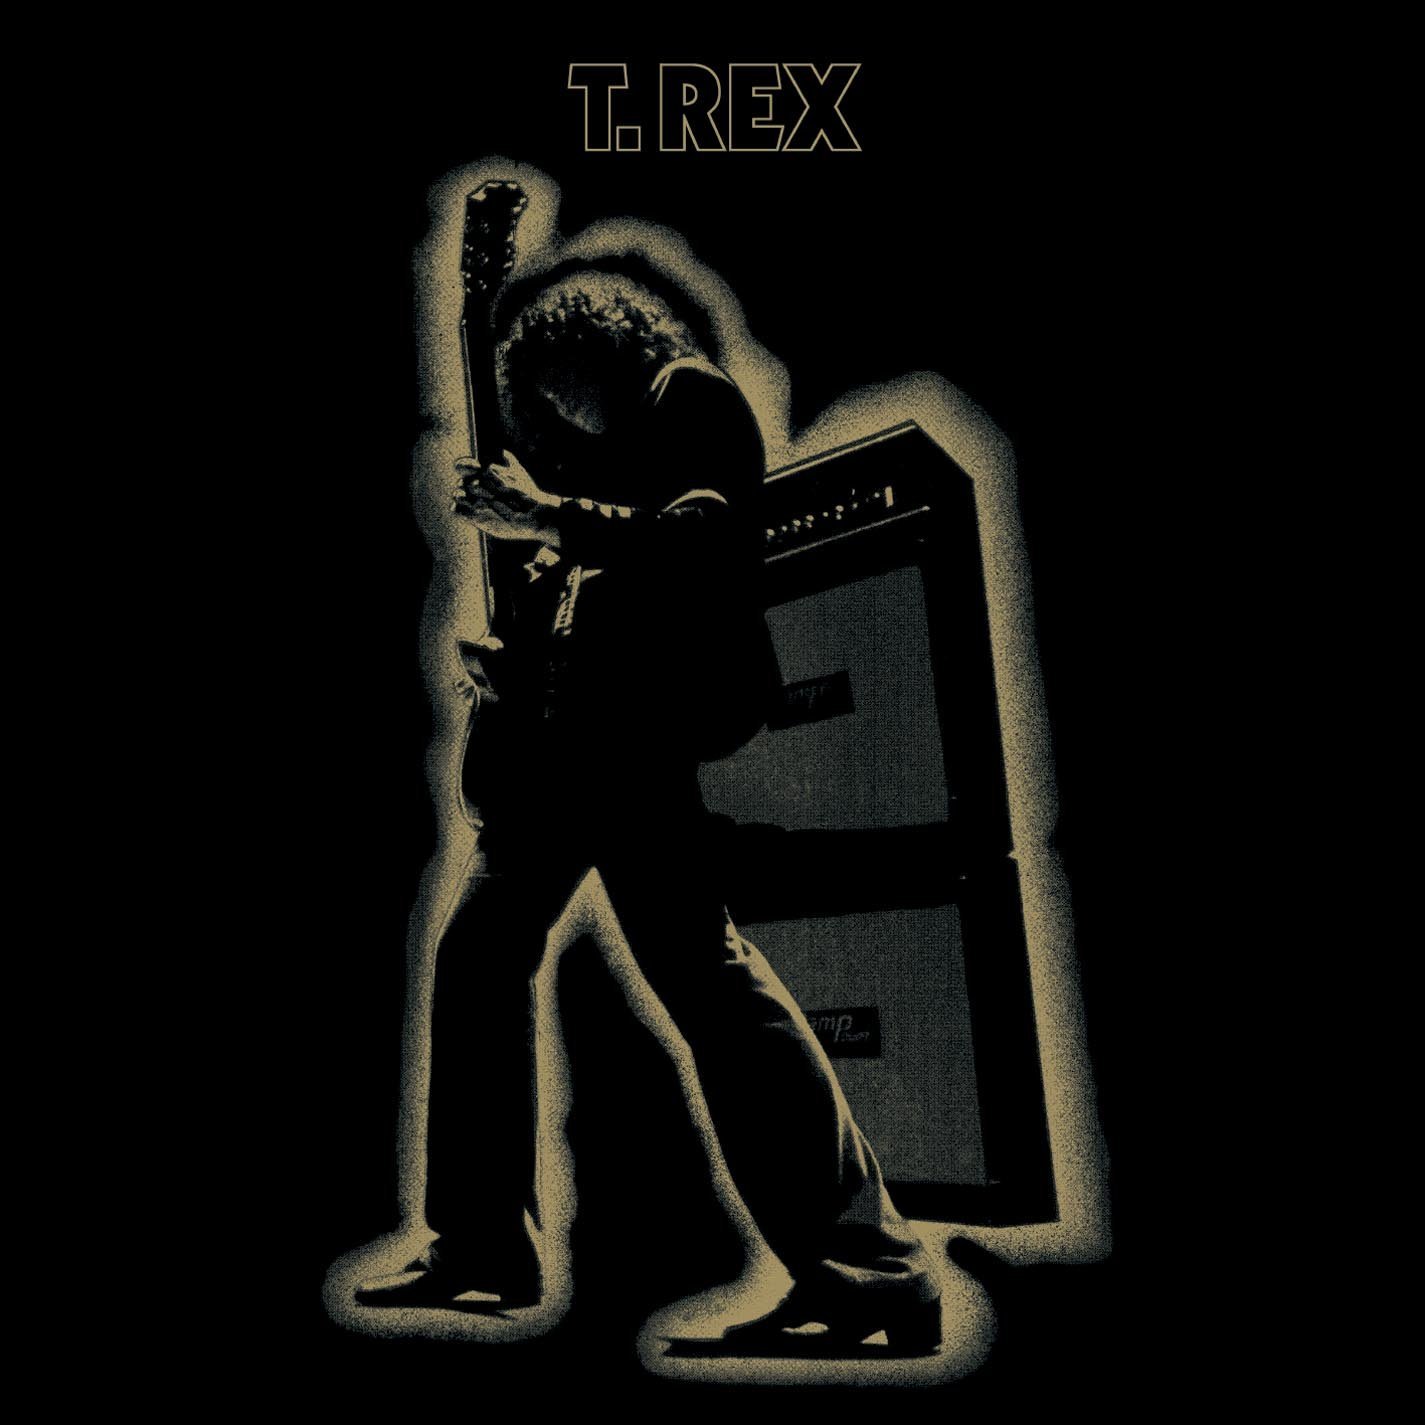 T-REXのこのアルバム画像をホームページに置いて見たいからの投稿